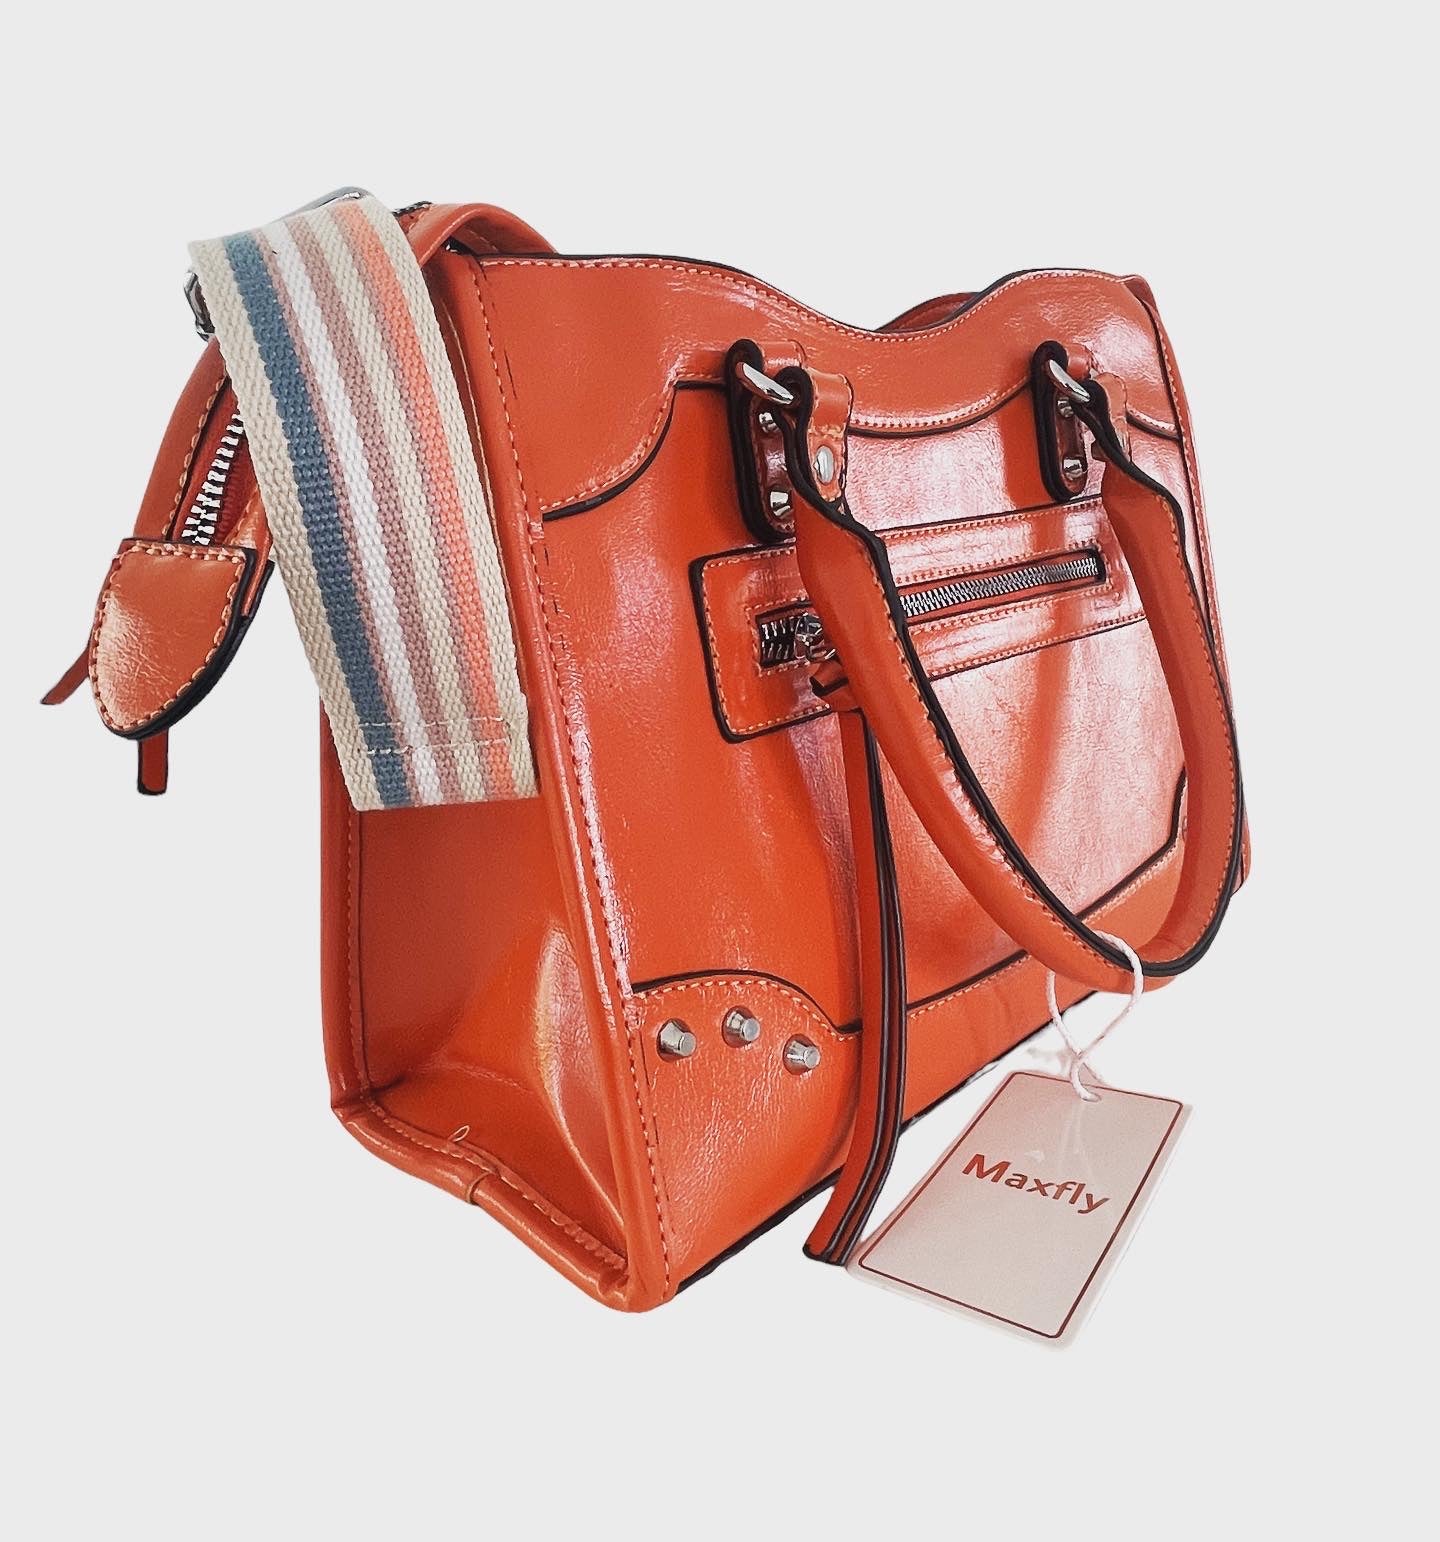 Mittelgroße orangefarbene Tasche mit beidseitigem Reißverschluss